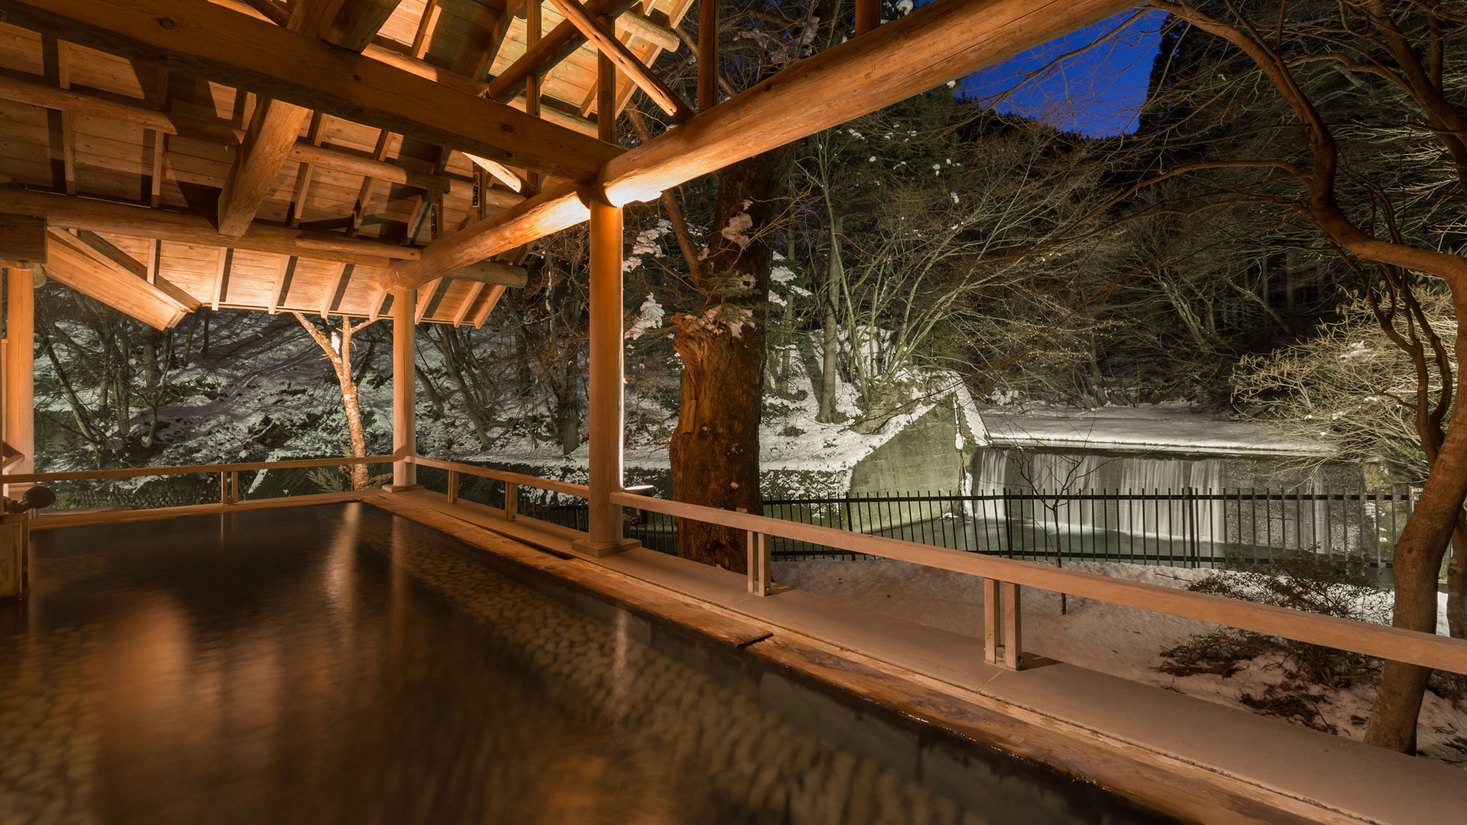 【滝見露天 森のこだま】四万たむらを代表するお風呂、四季折々の景色と美肌の湯を楽しめる。